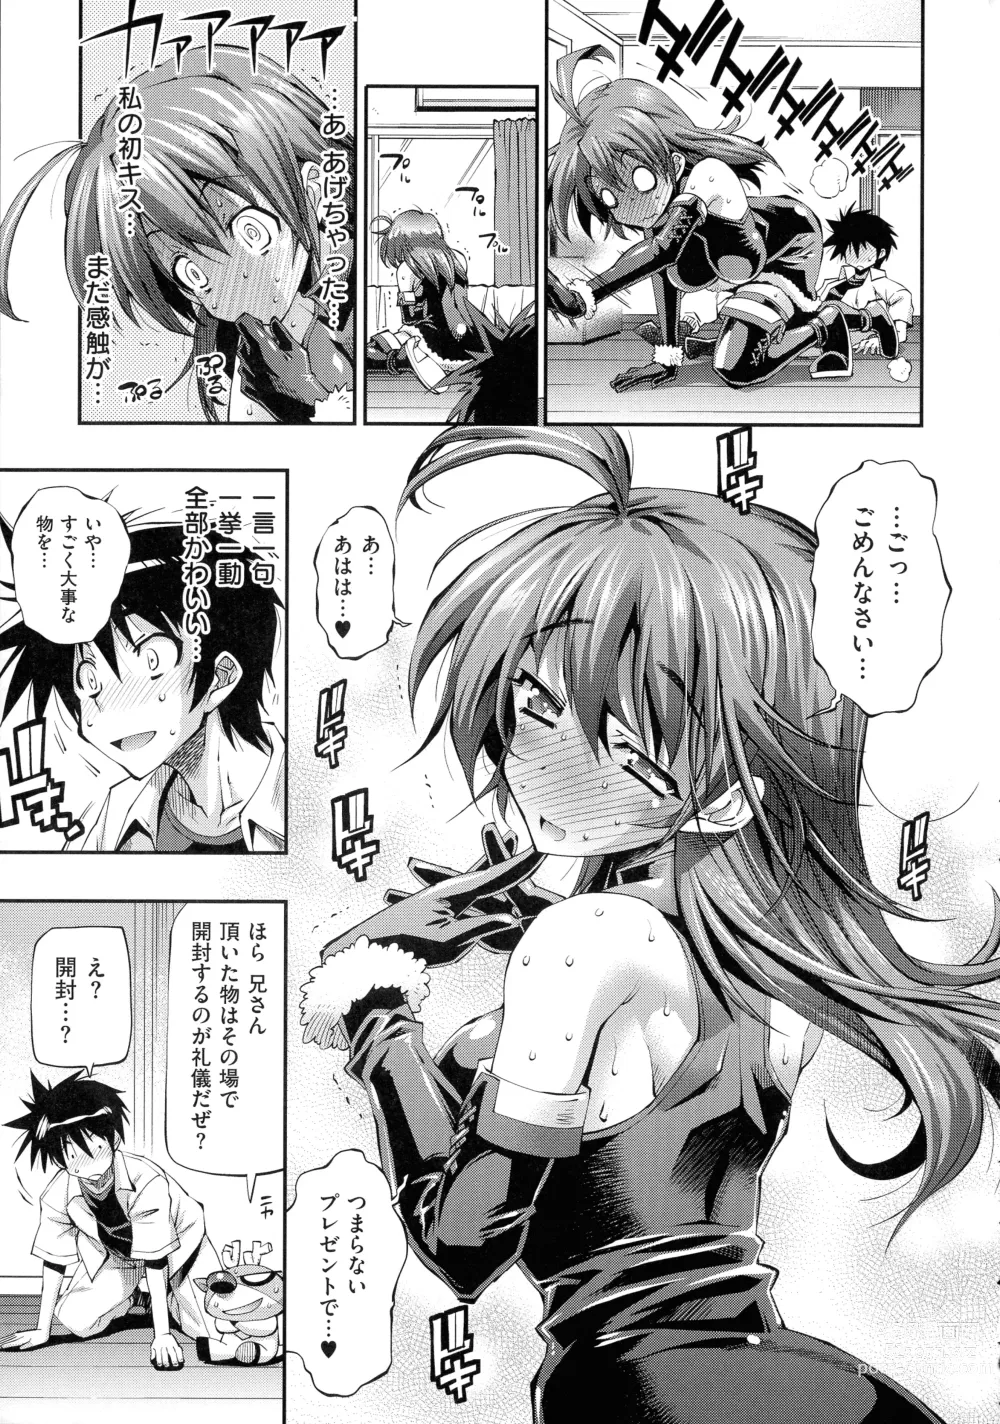 Page 15 of manga Kanojo wa Manatsu no Santa Claus